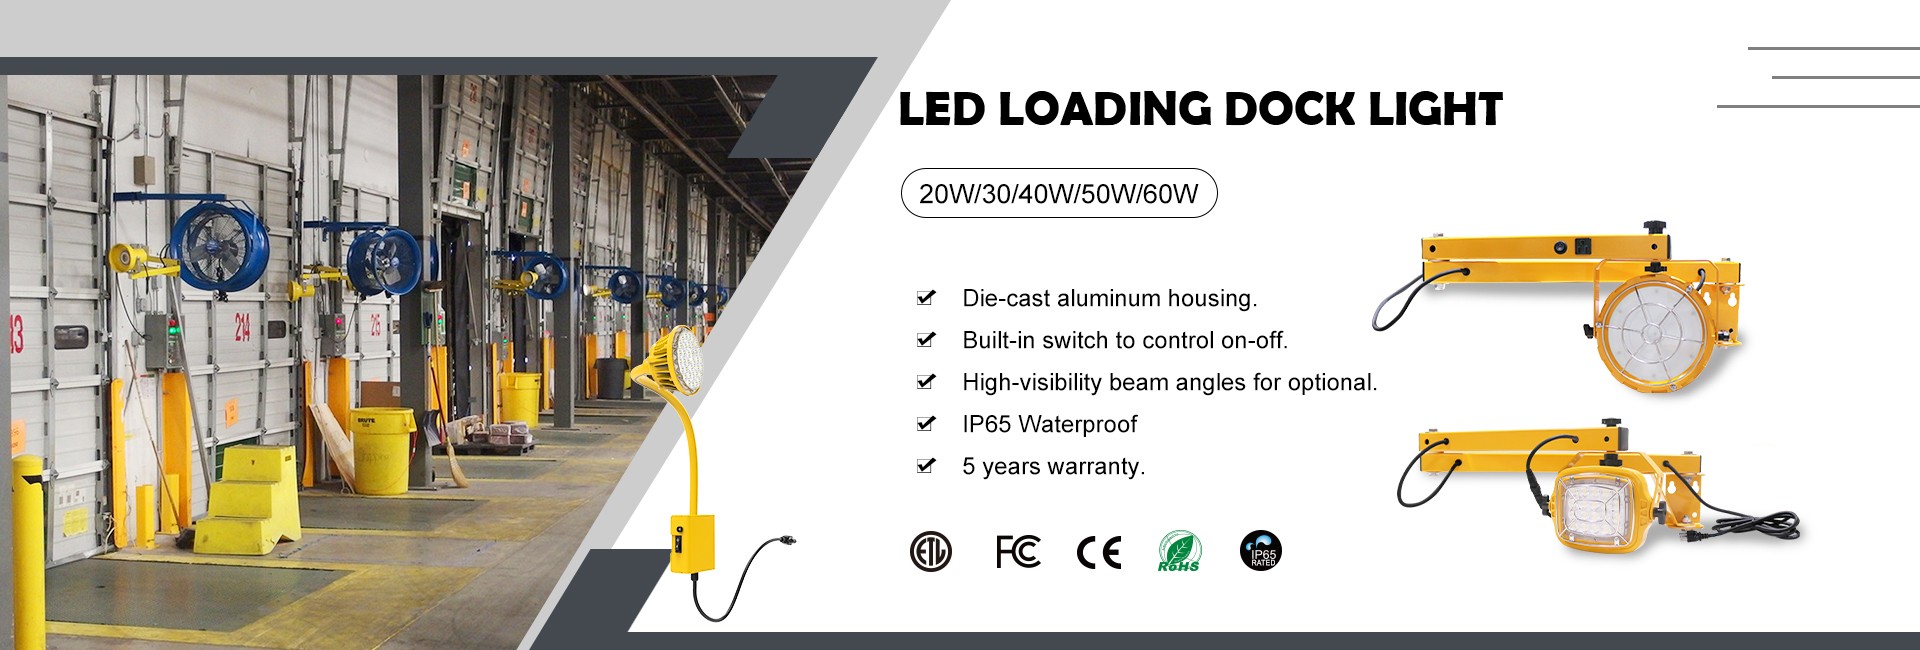 LED Loading Dock Light